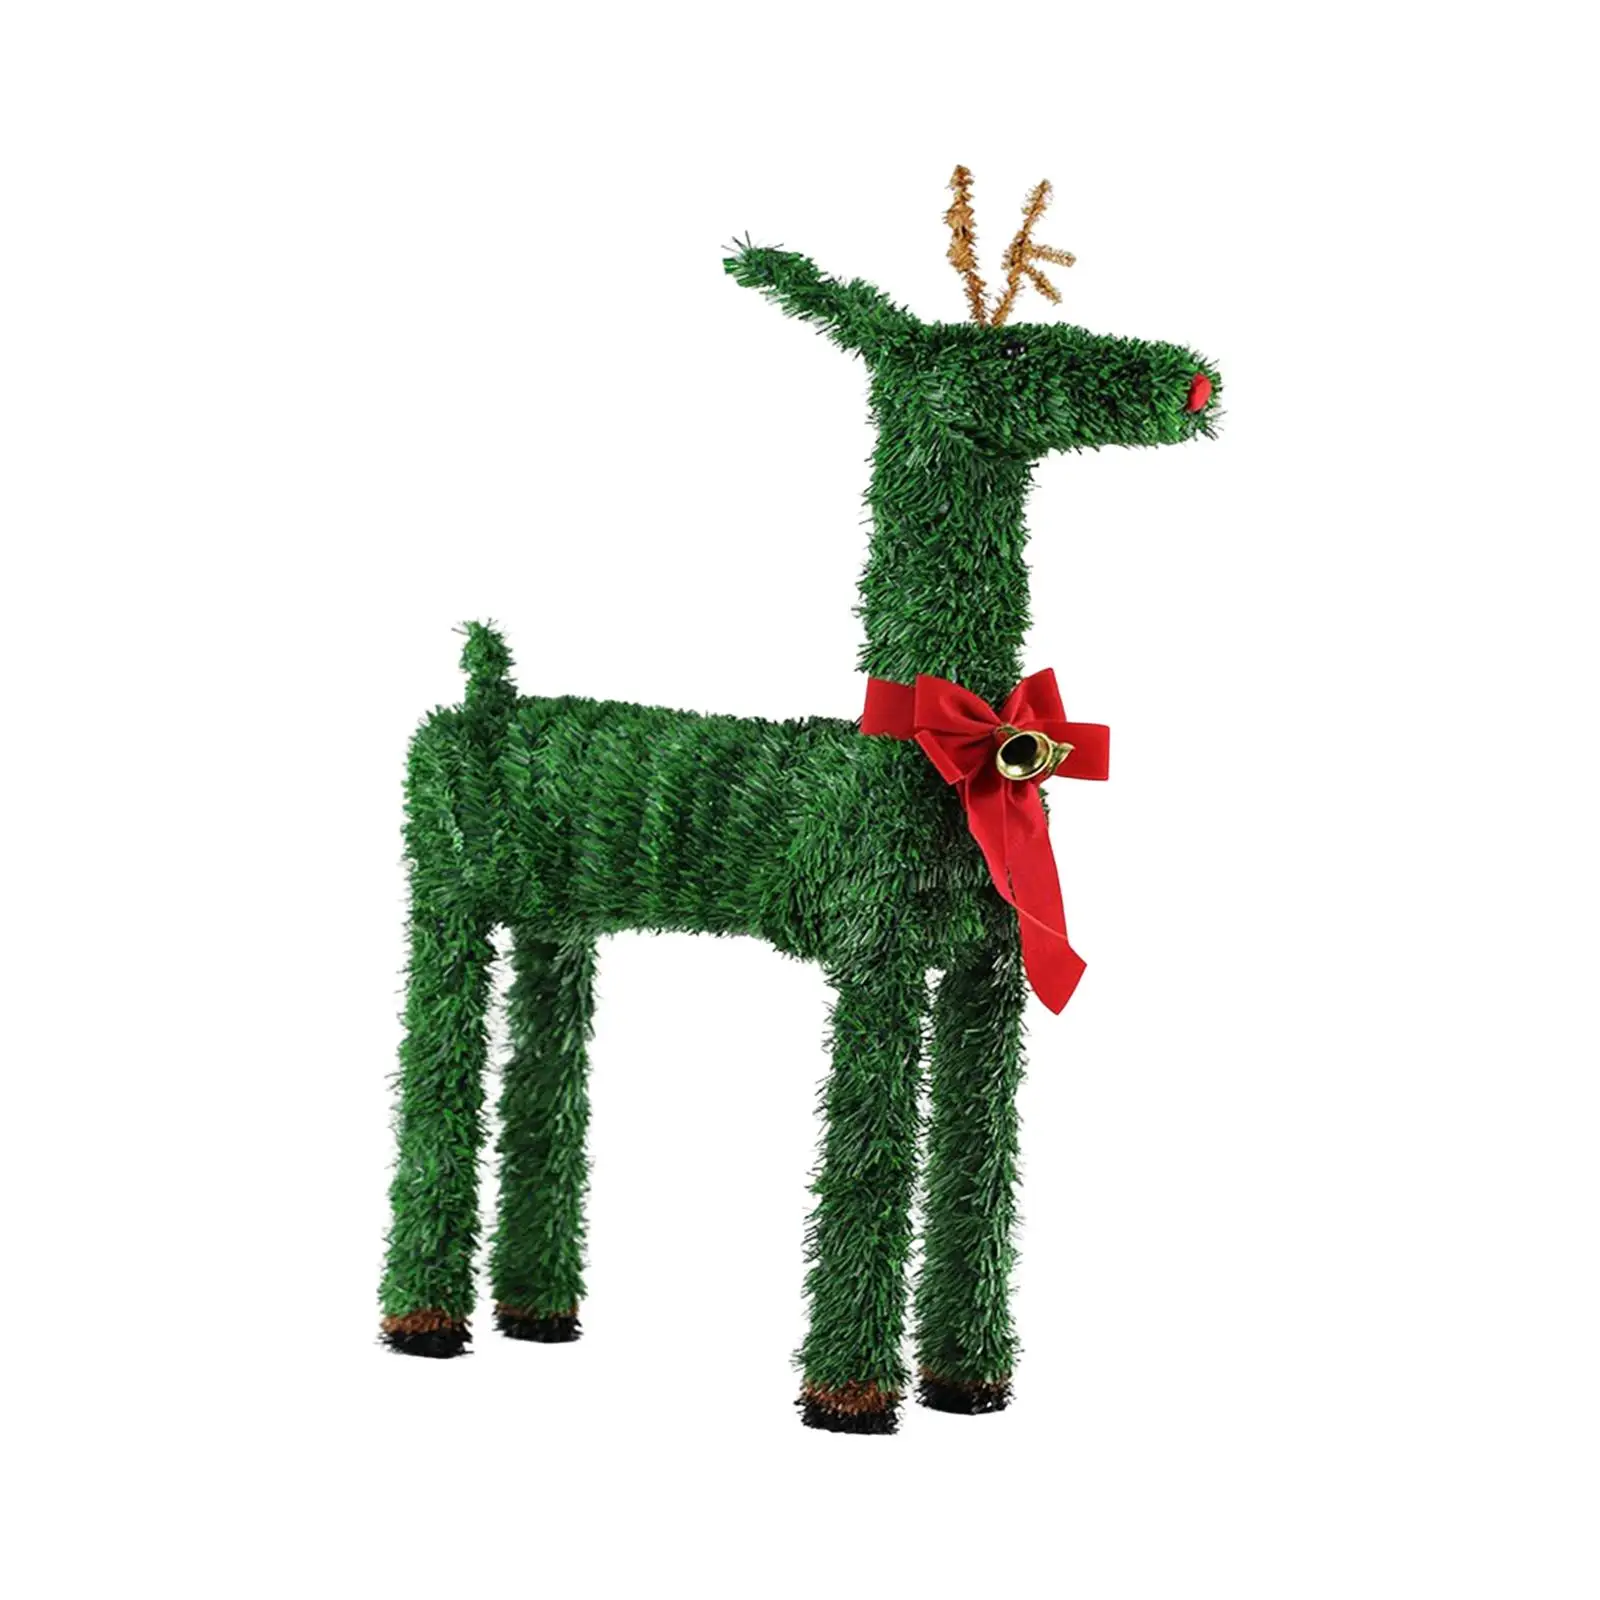 Wood Christmas Deer Ornament Crafts Reindeer Decoration for Living Room